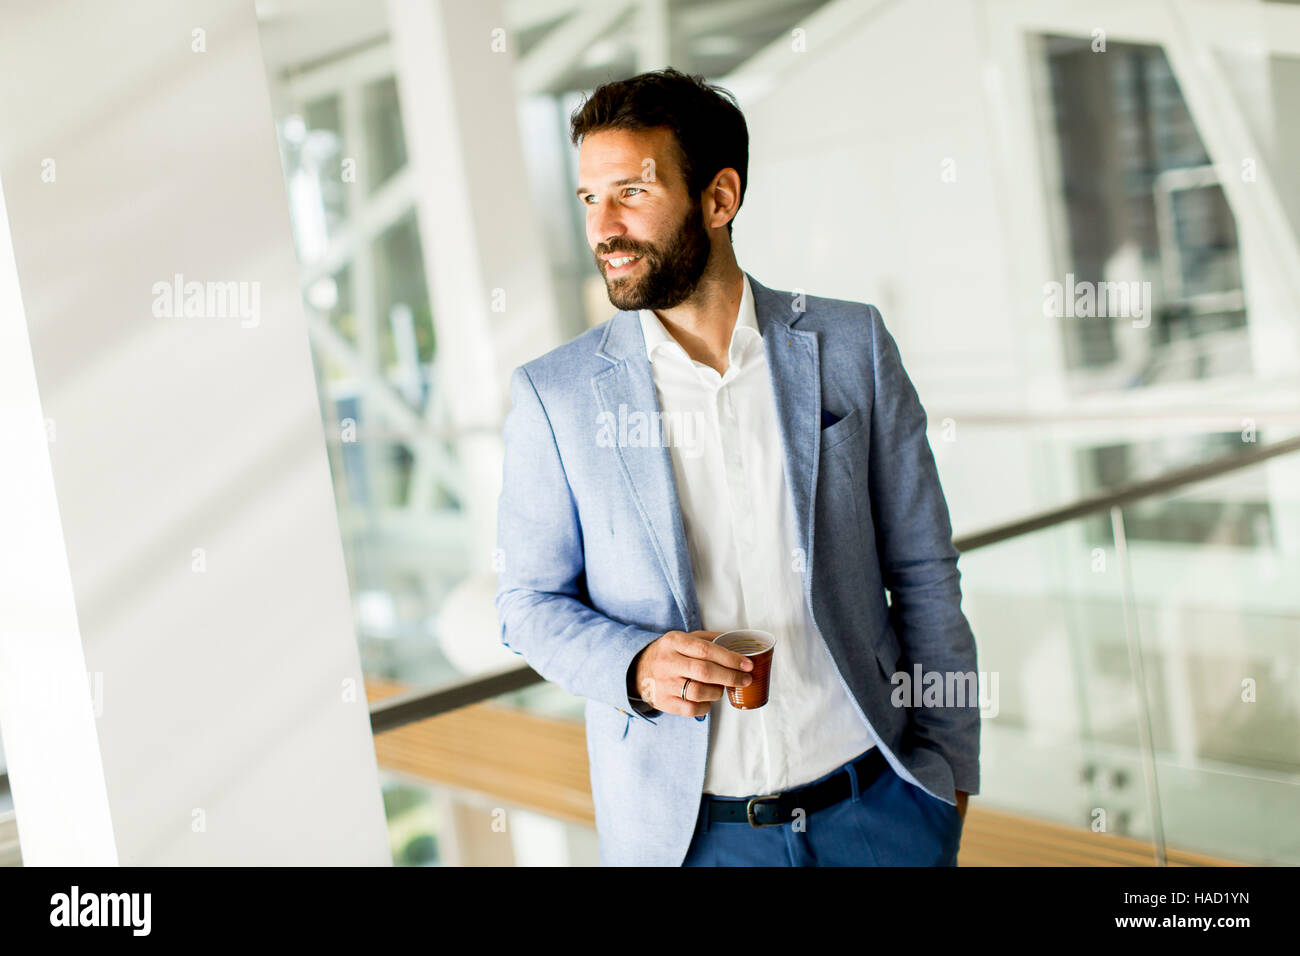 Geschäftsmann in einem Business-Anzug und eine Tasse Kaffee in einem Bürogebäude. Stockfoto